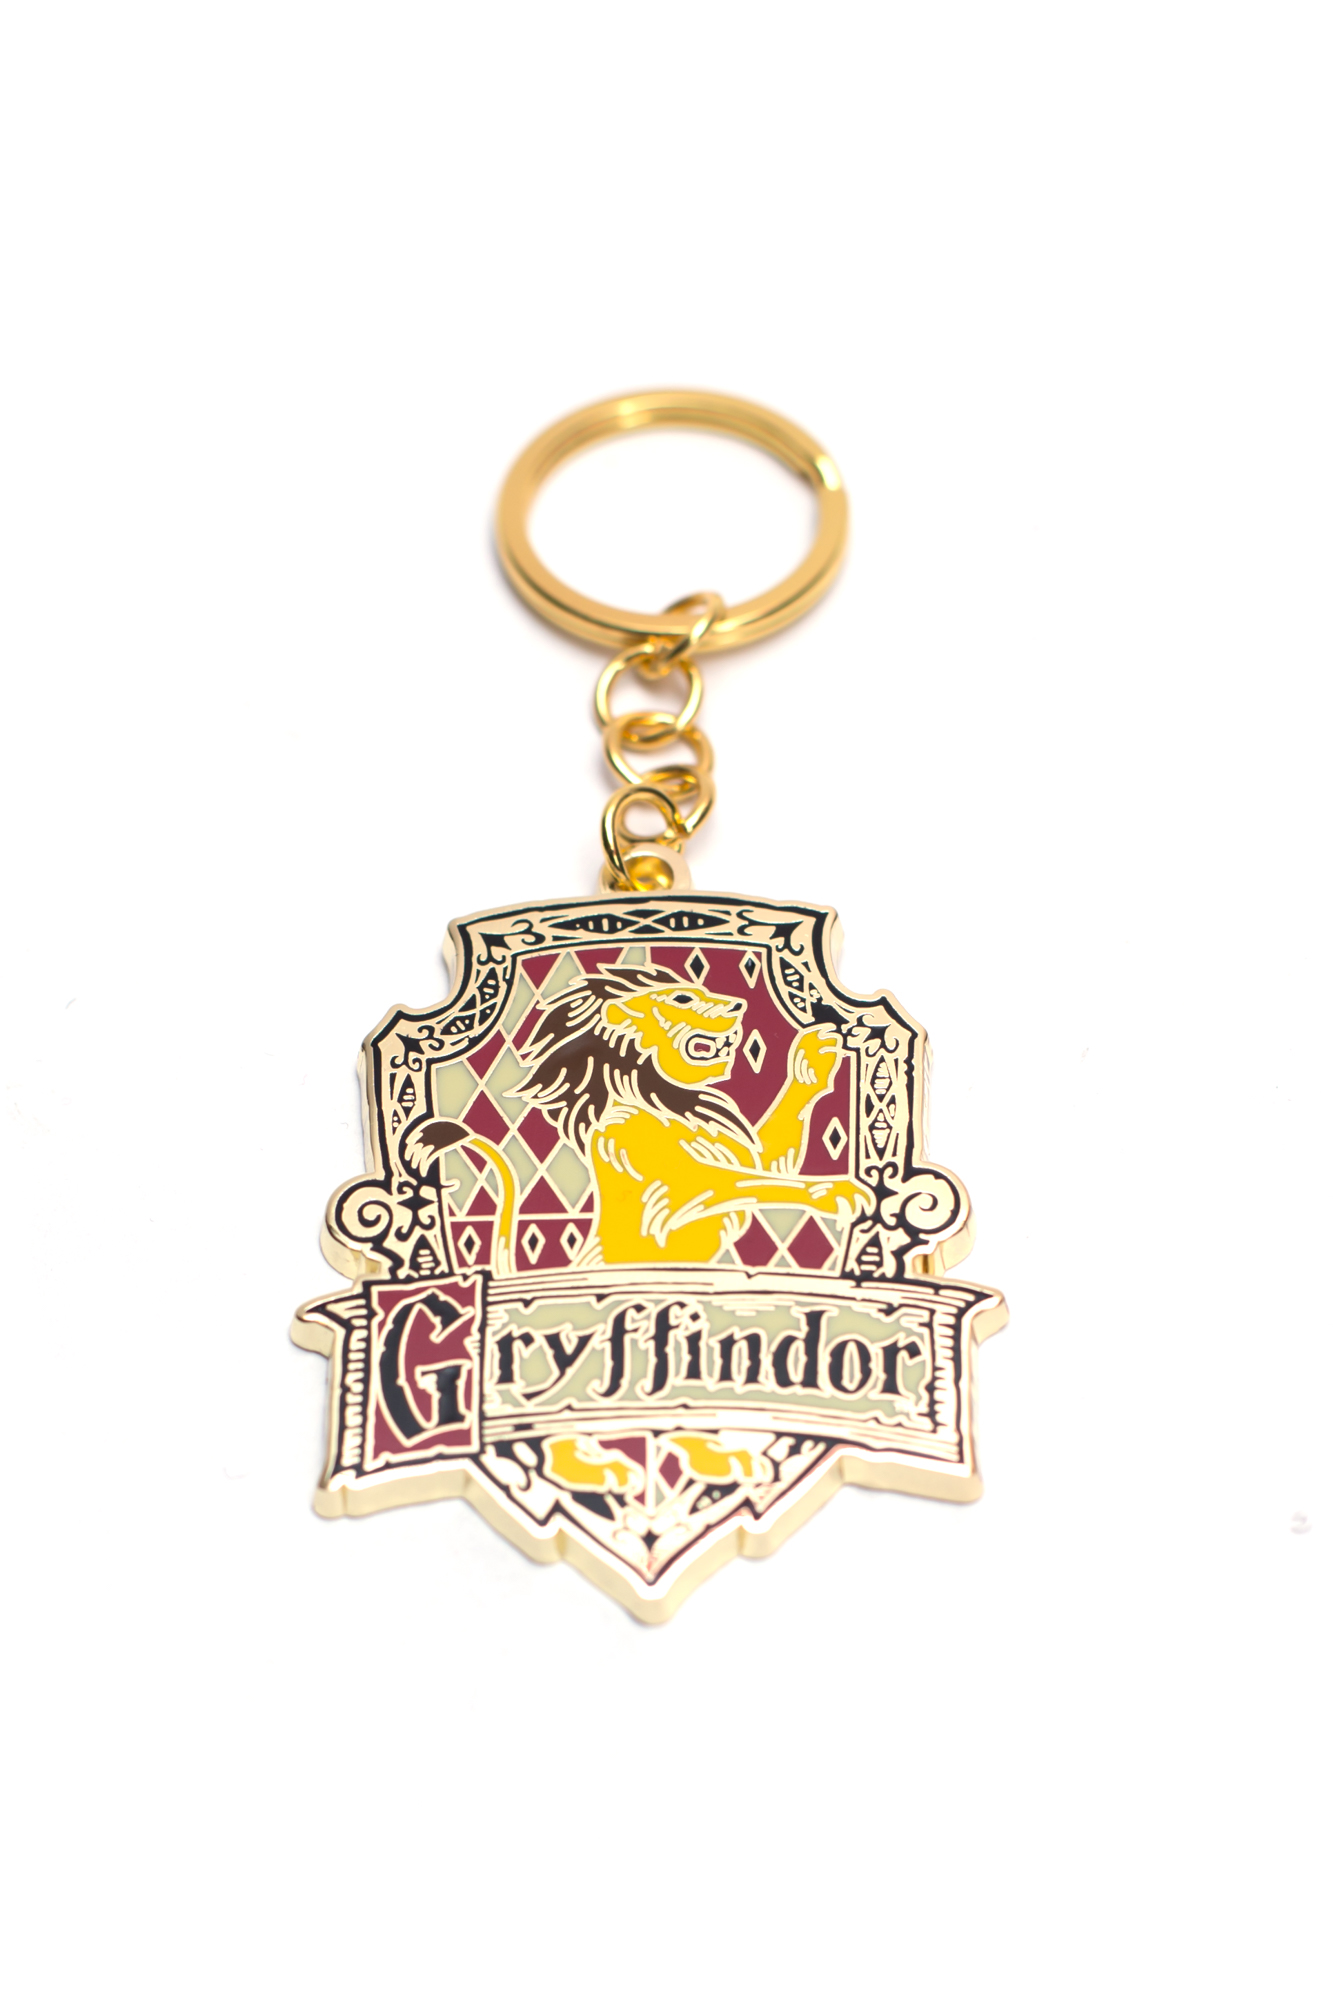 Bioworld Gryffindor Keychain